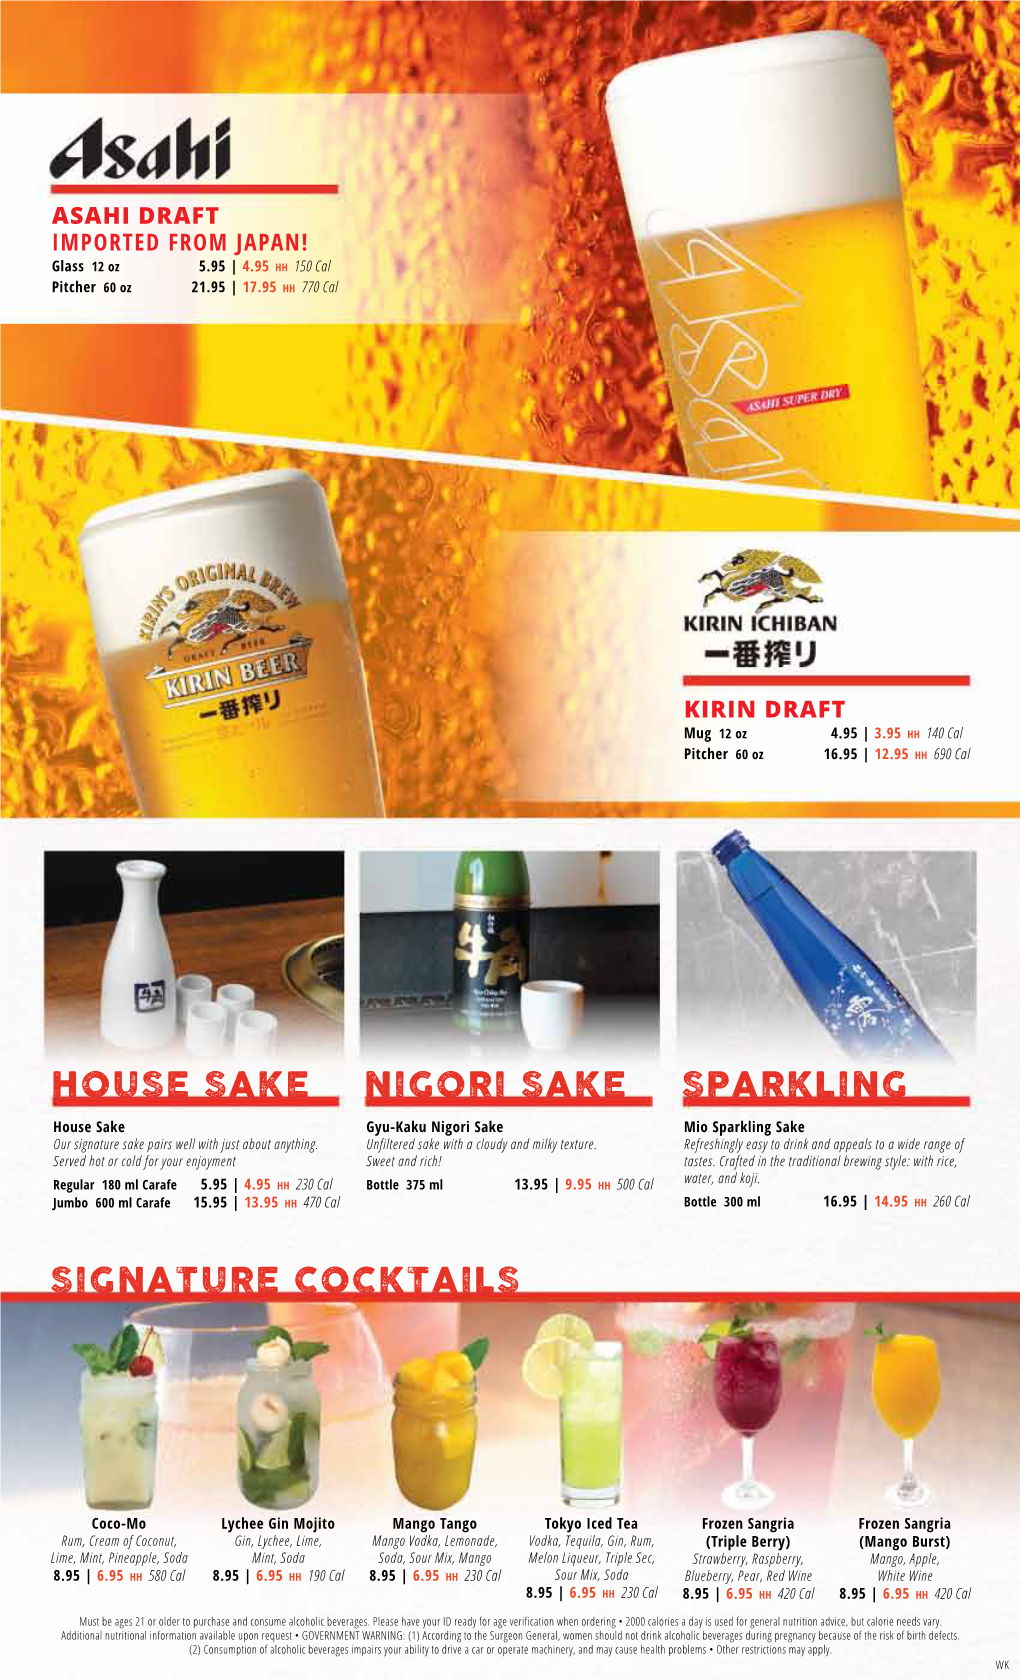 Signature Cocktails Nigori Sake House Sake